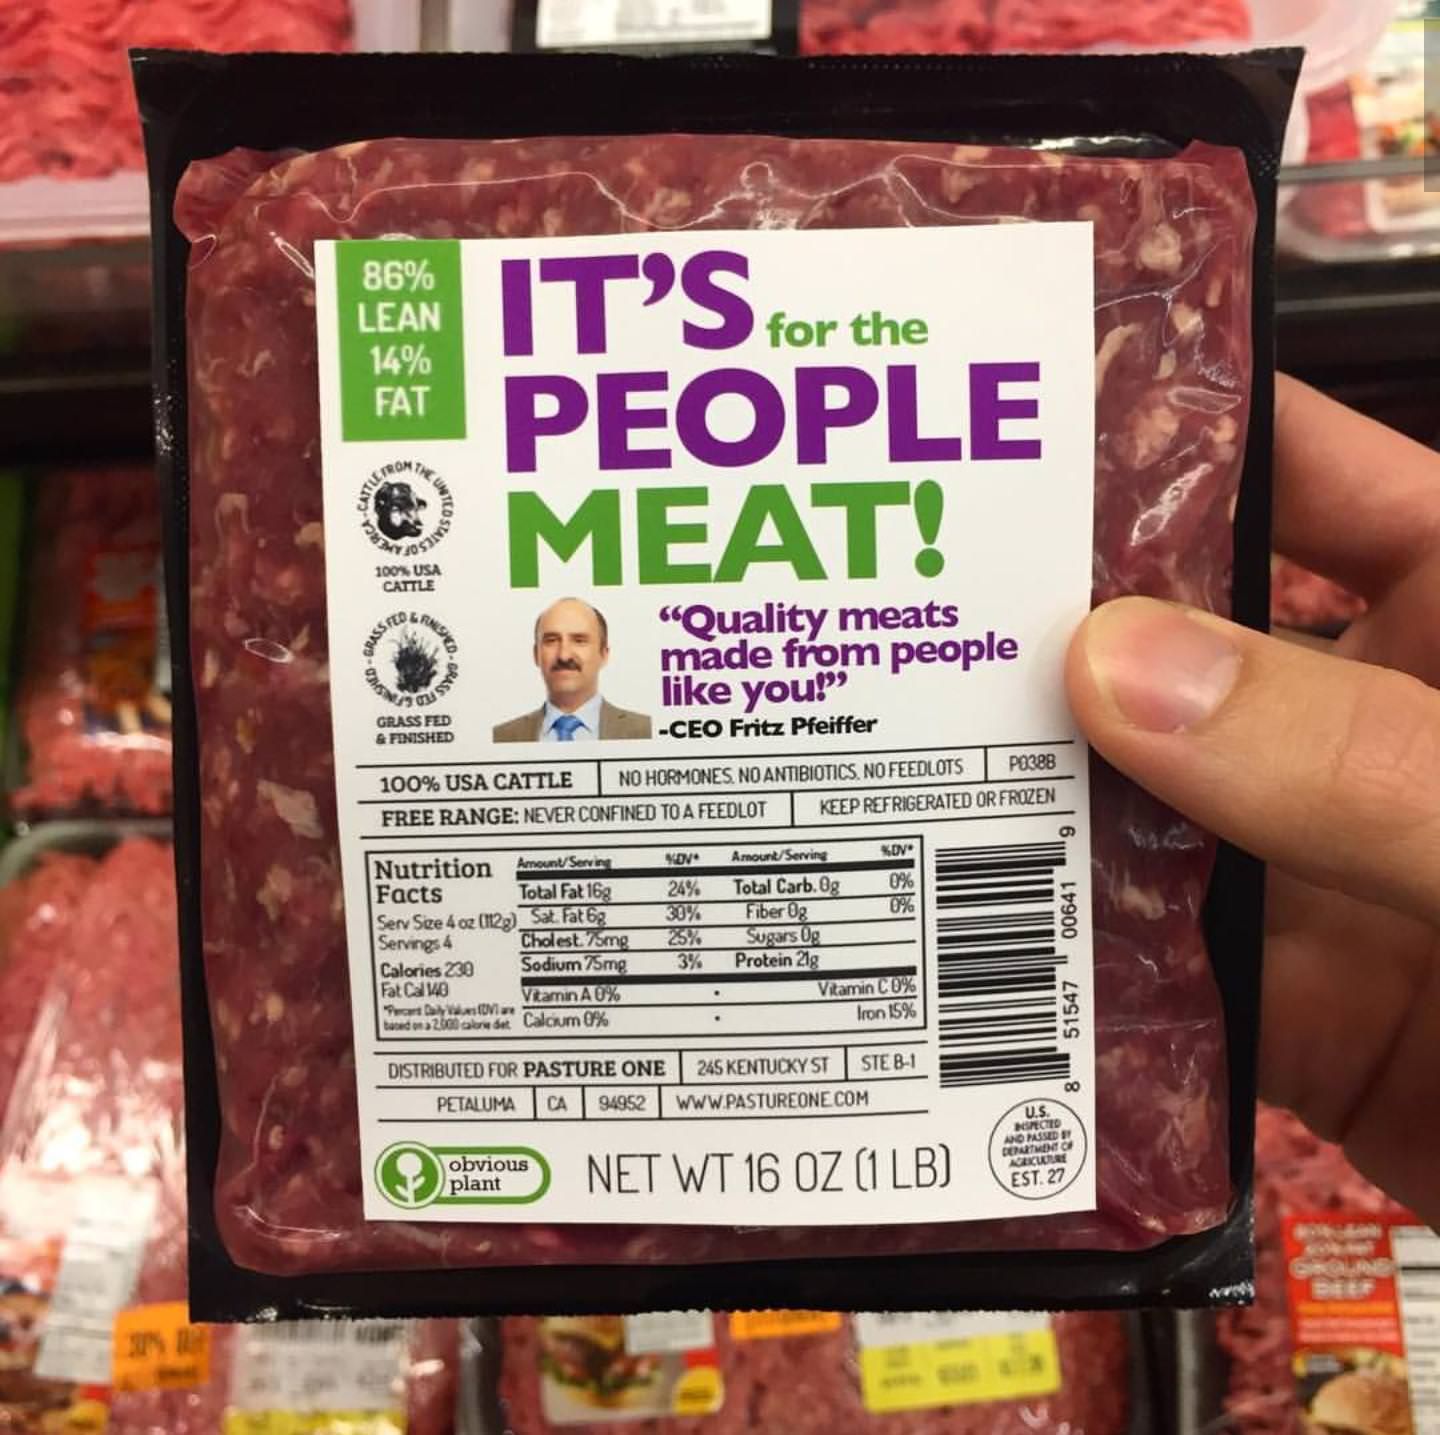 IT'S PEOPLE MEAT!